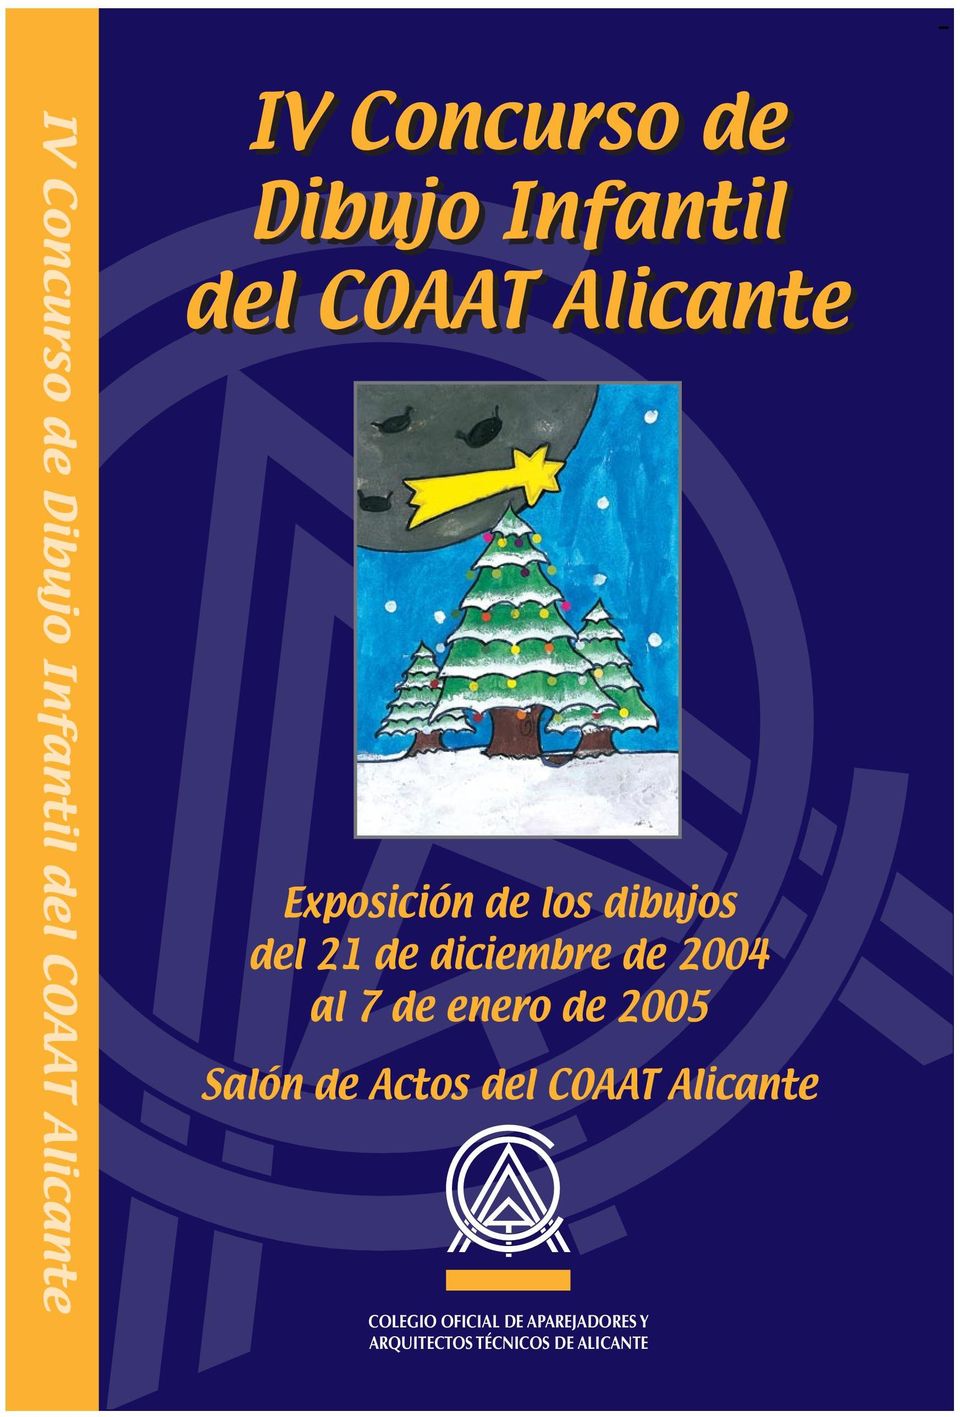 de diciembre de 2004 al 7 de enero de 2005 Salón de Actos del COAAT